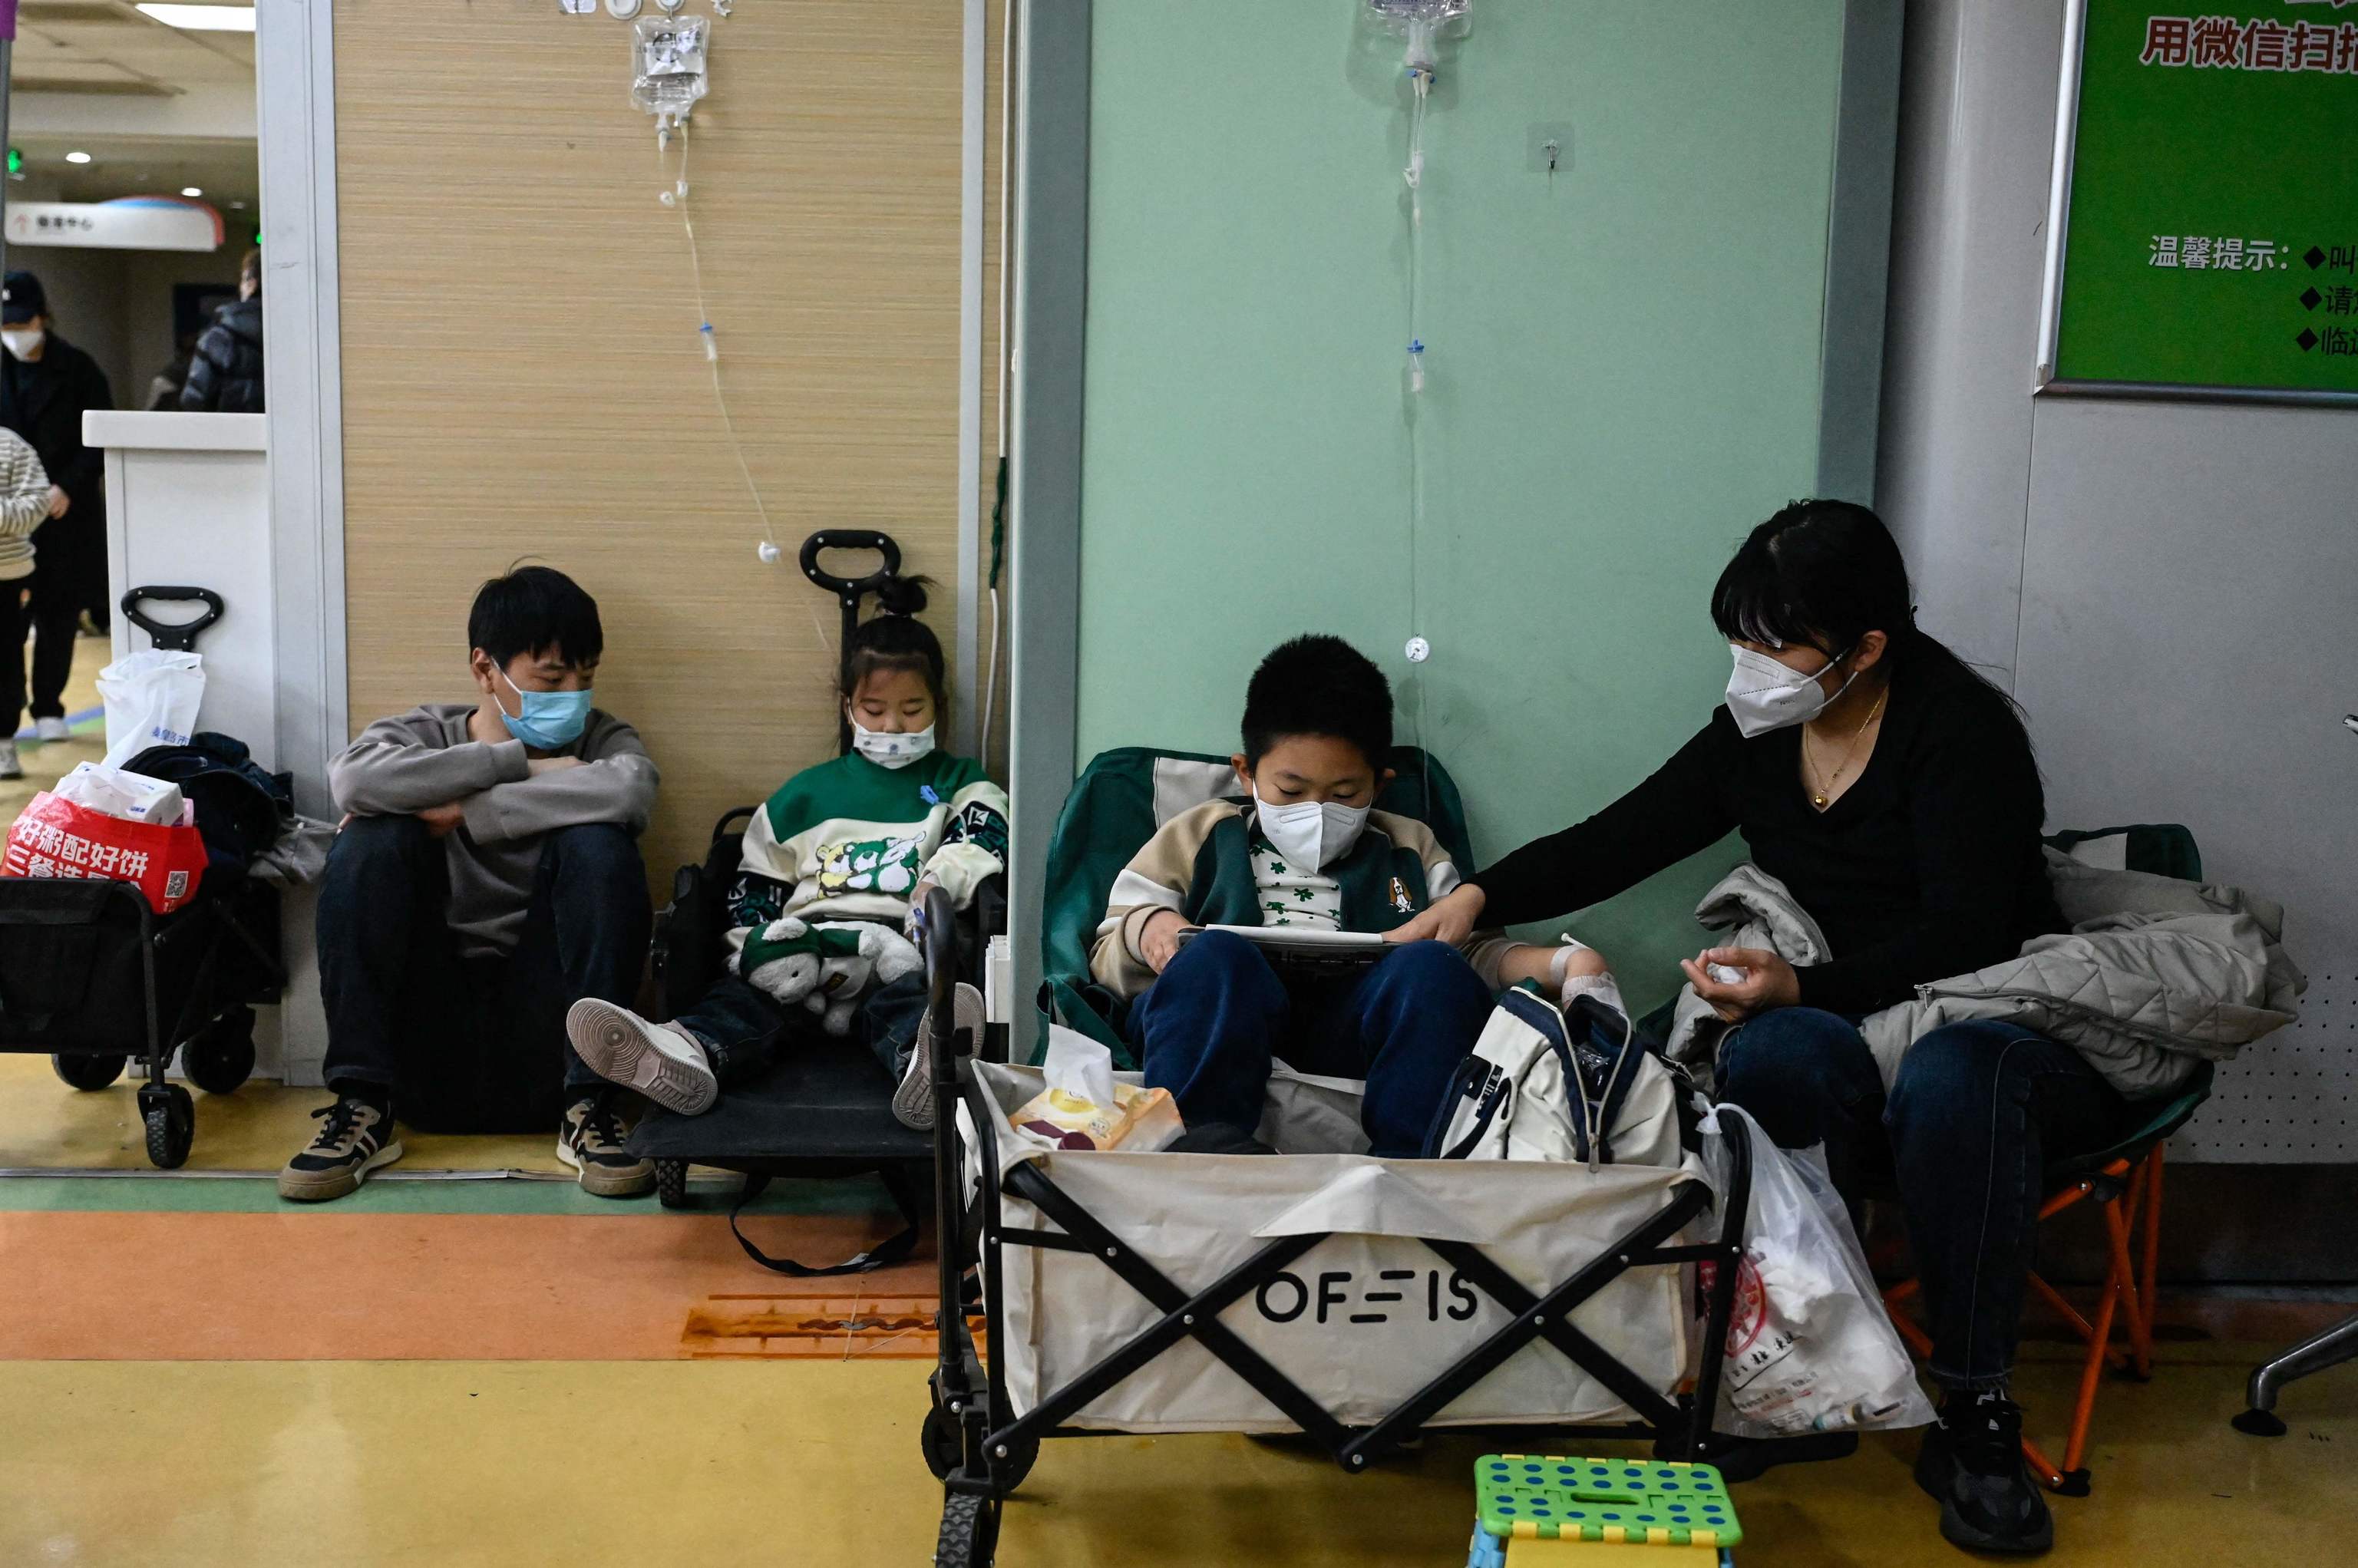 Hospitales chinos desbordados por un brote de neumonía en niños: la OMS  pide a Pekín información sobre el aumento de enfermedades respiratorias |  Salud